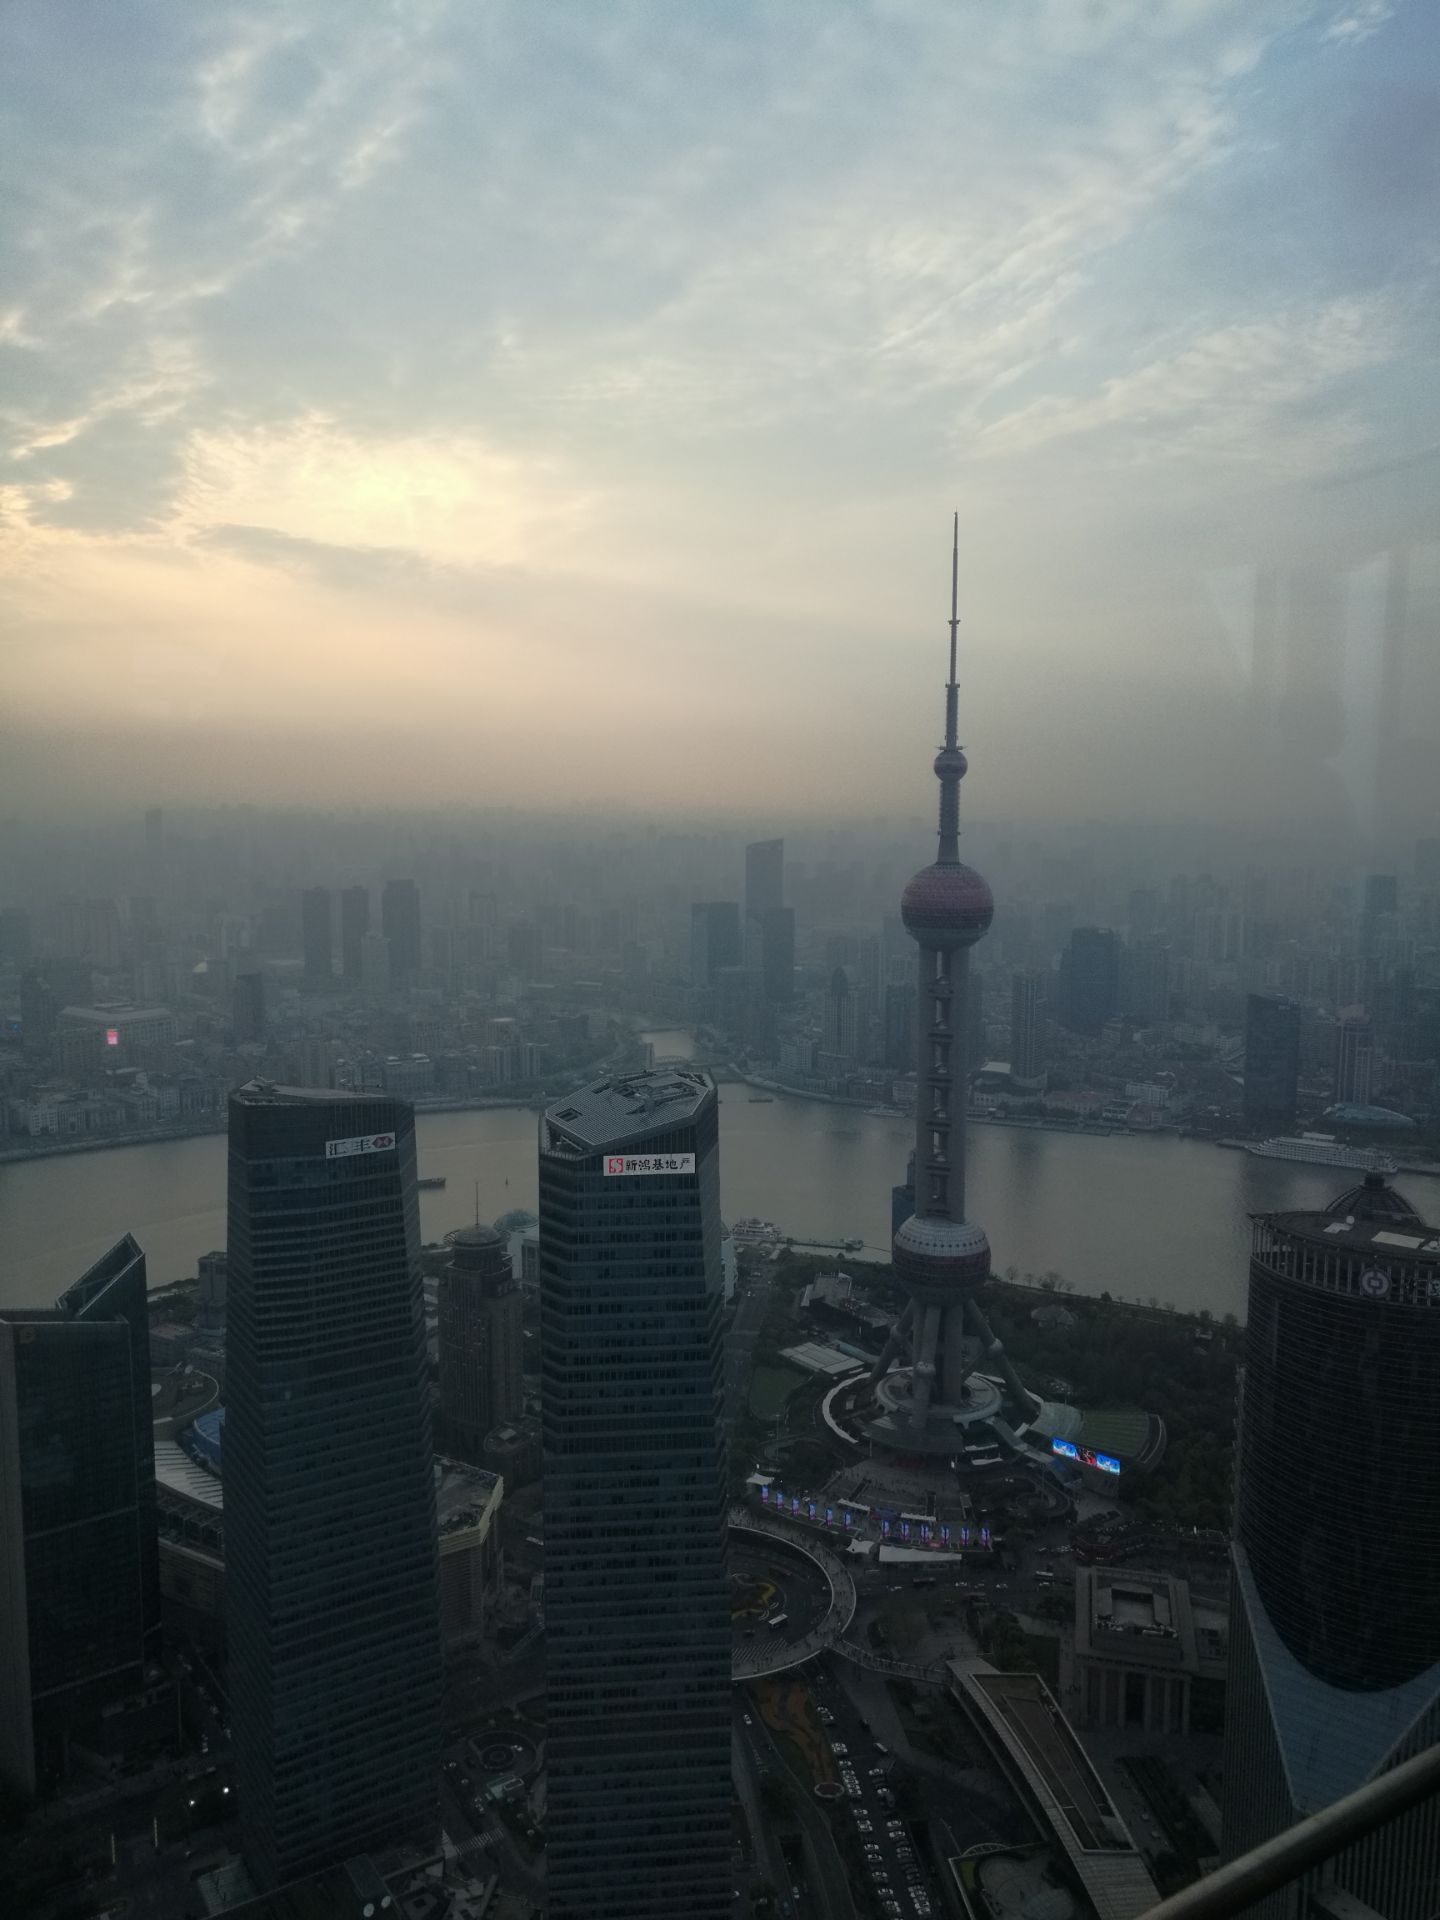 【携程攻略】上海金茂大厦景点,在上海单身的人可以选择这样的轻松方式游玩